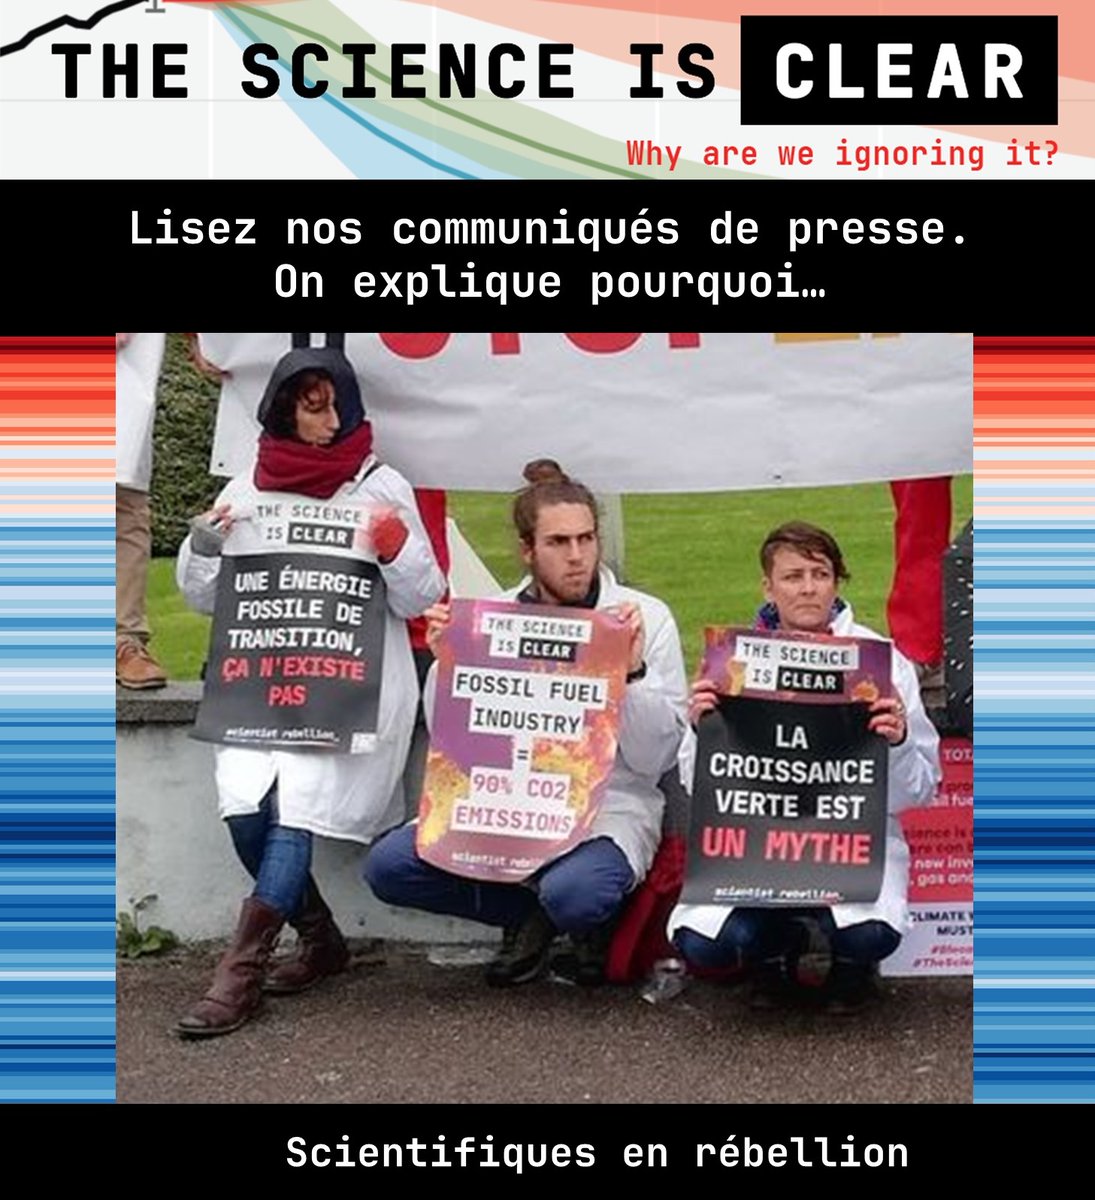 5/5 Lisez nos communiqués de presse. On explique pourquoi… scientifiquesenrebellion.fr/textes/presse/…
#TheScienceIsClear #CarnageTotal